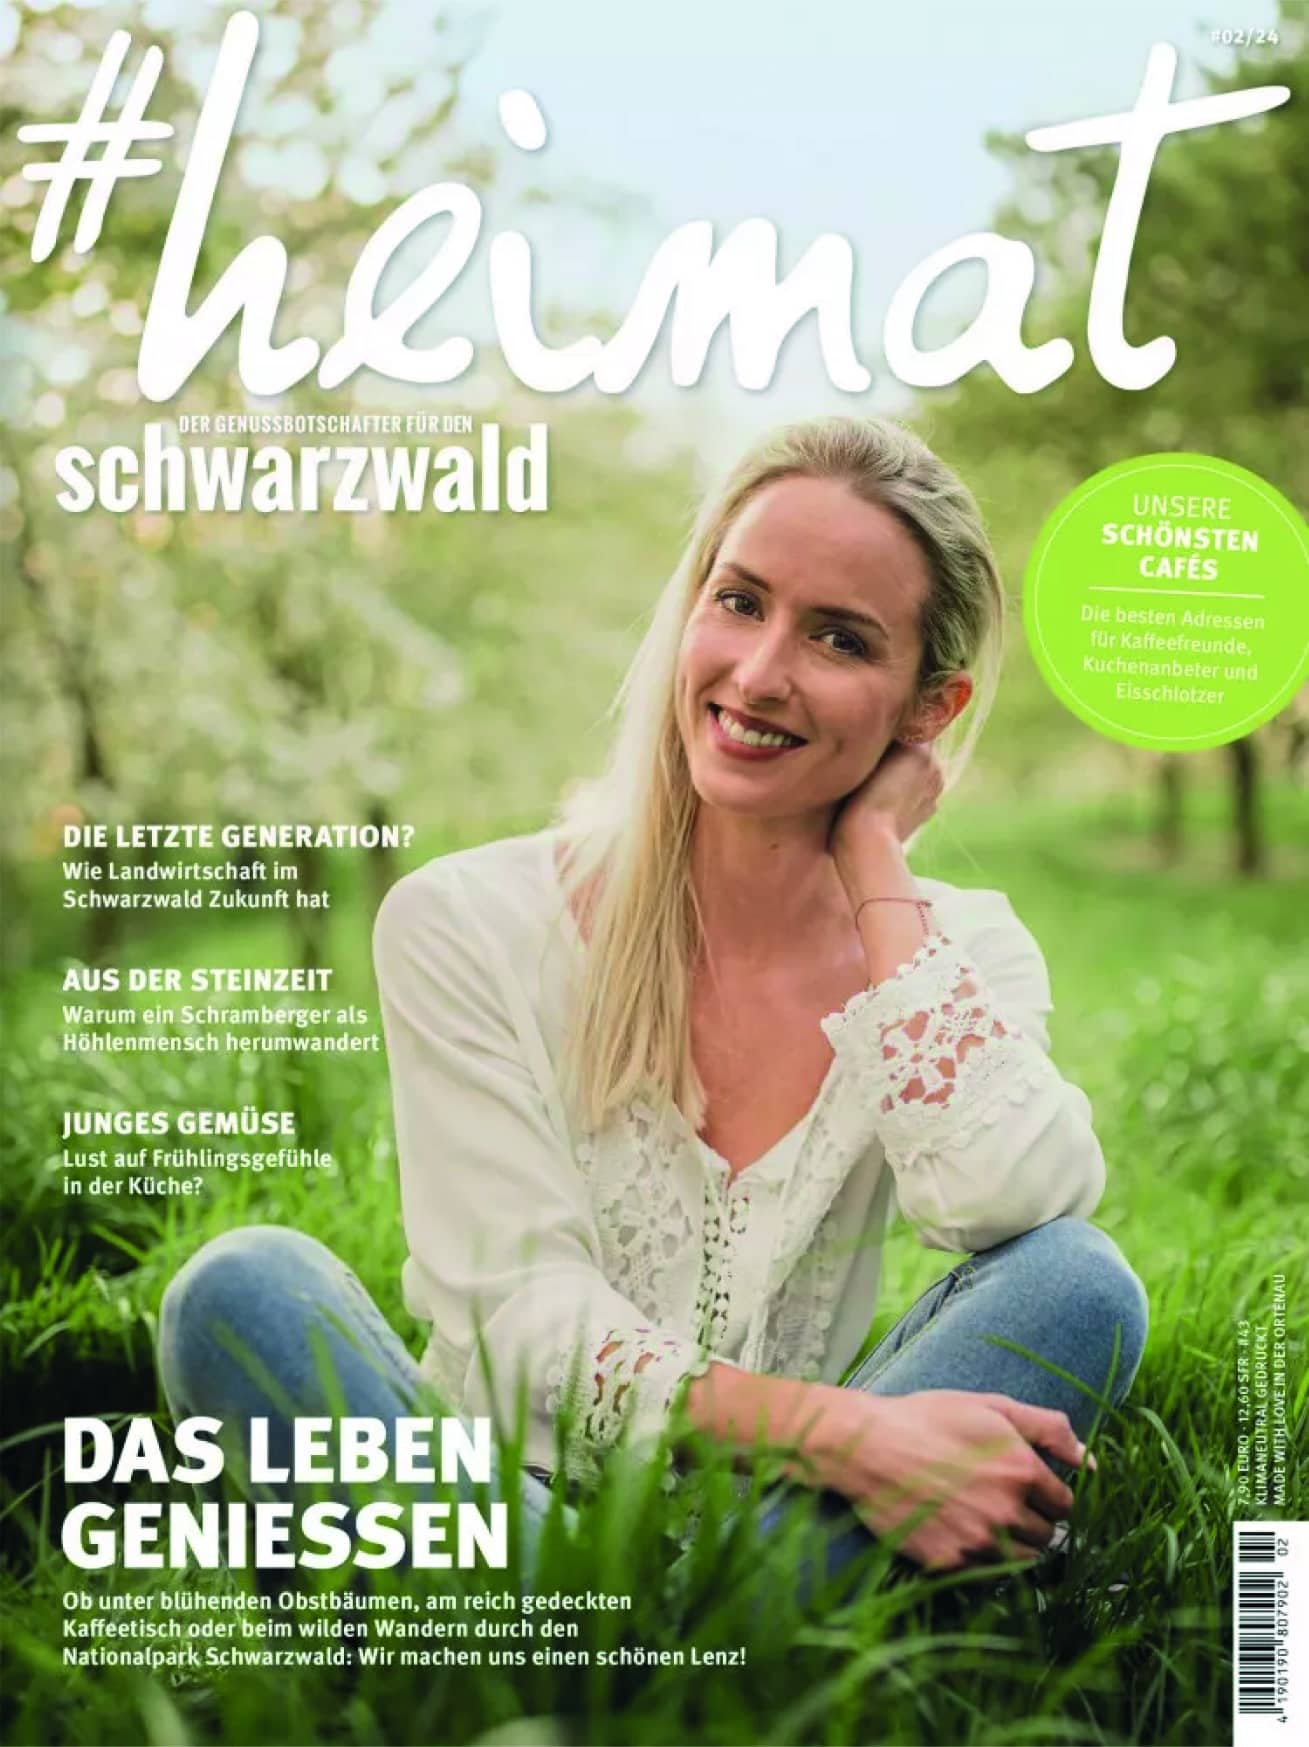 # heimat schwarzwald